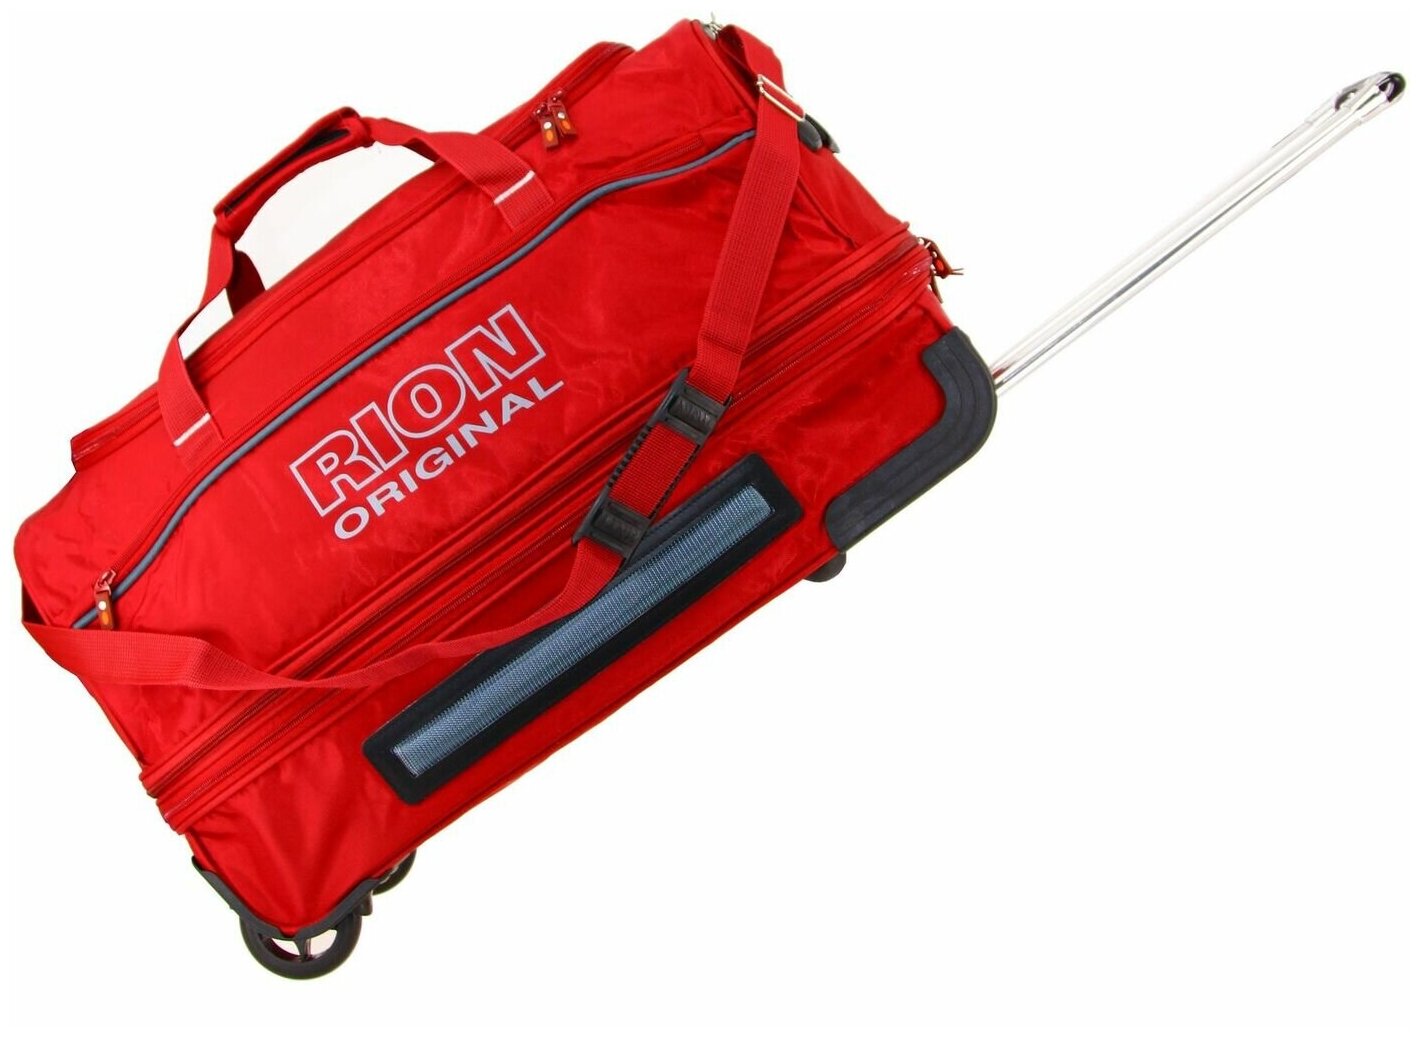 Дорожная сумка на колесах Рион+ (RION+) для путешествий и спорта R147, 98 литров, укрепленная (до 25кг), водоотталкивающая ткань, бордовый